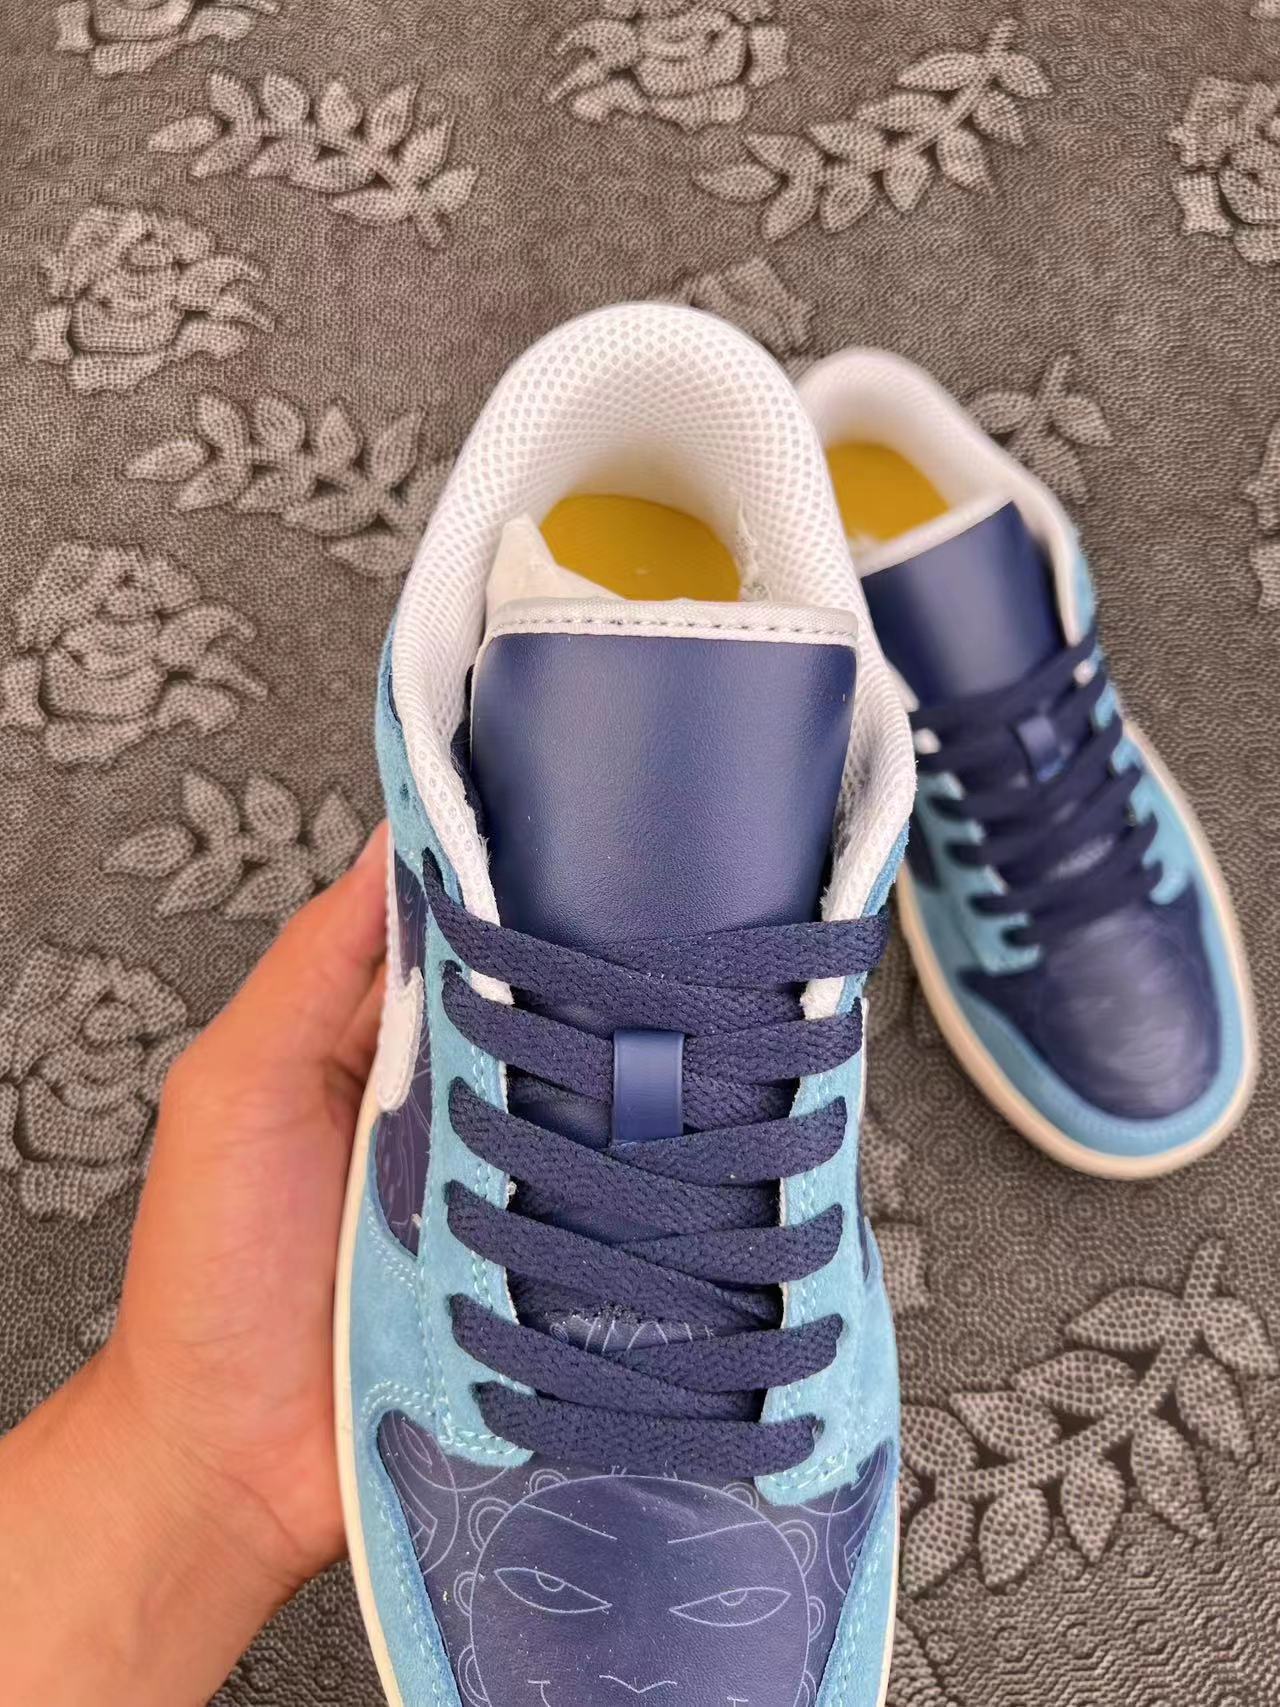 ? 正品定制Nike Dunk SB Low 树莓美式复古板鞋 白蓝配色?